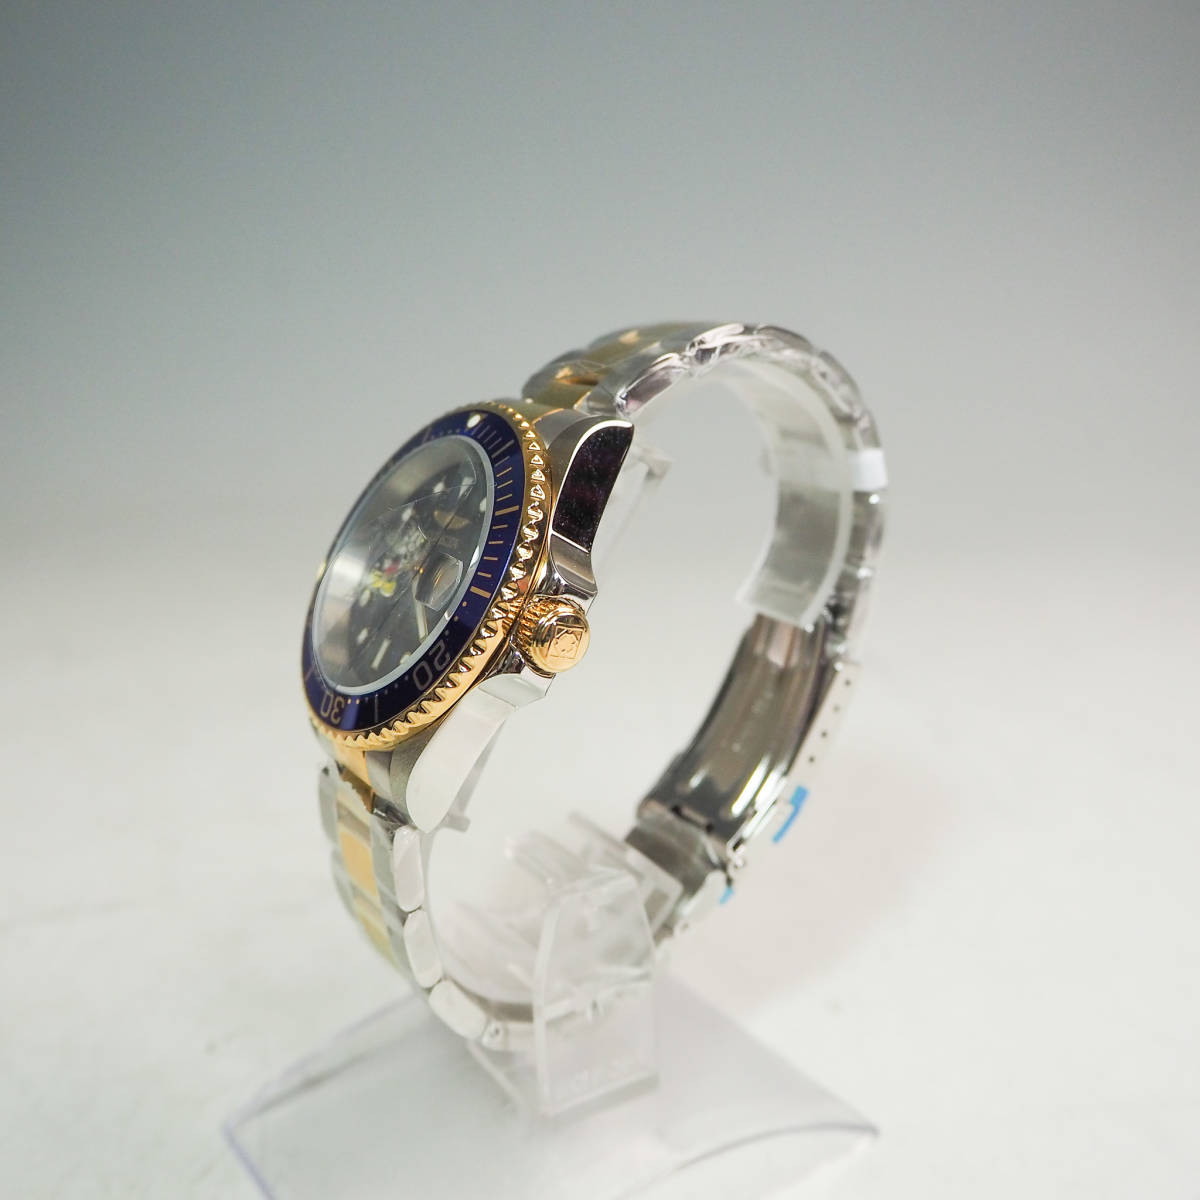 未使用品 INVICTA インヴィクタ Disney ディズニー Limited Edition 自動巻 腕時計 model 22778 世界限定3000個 クォーツ ミッキー GR832_画像3